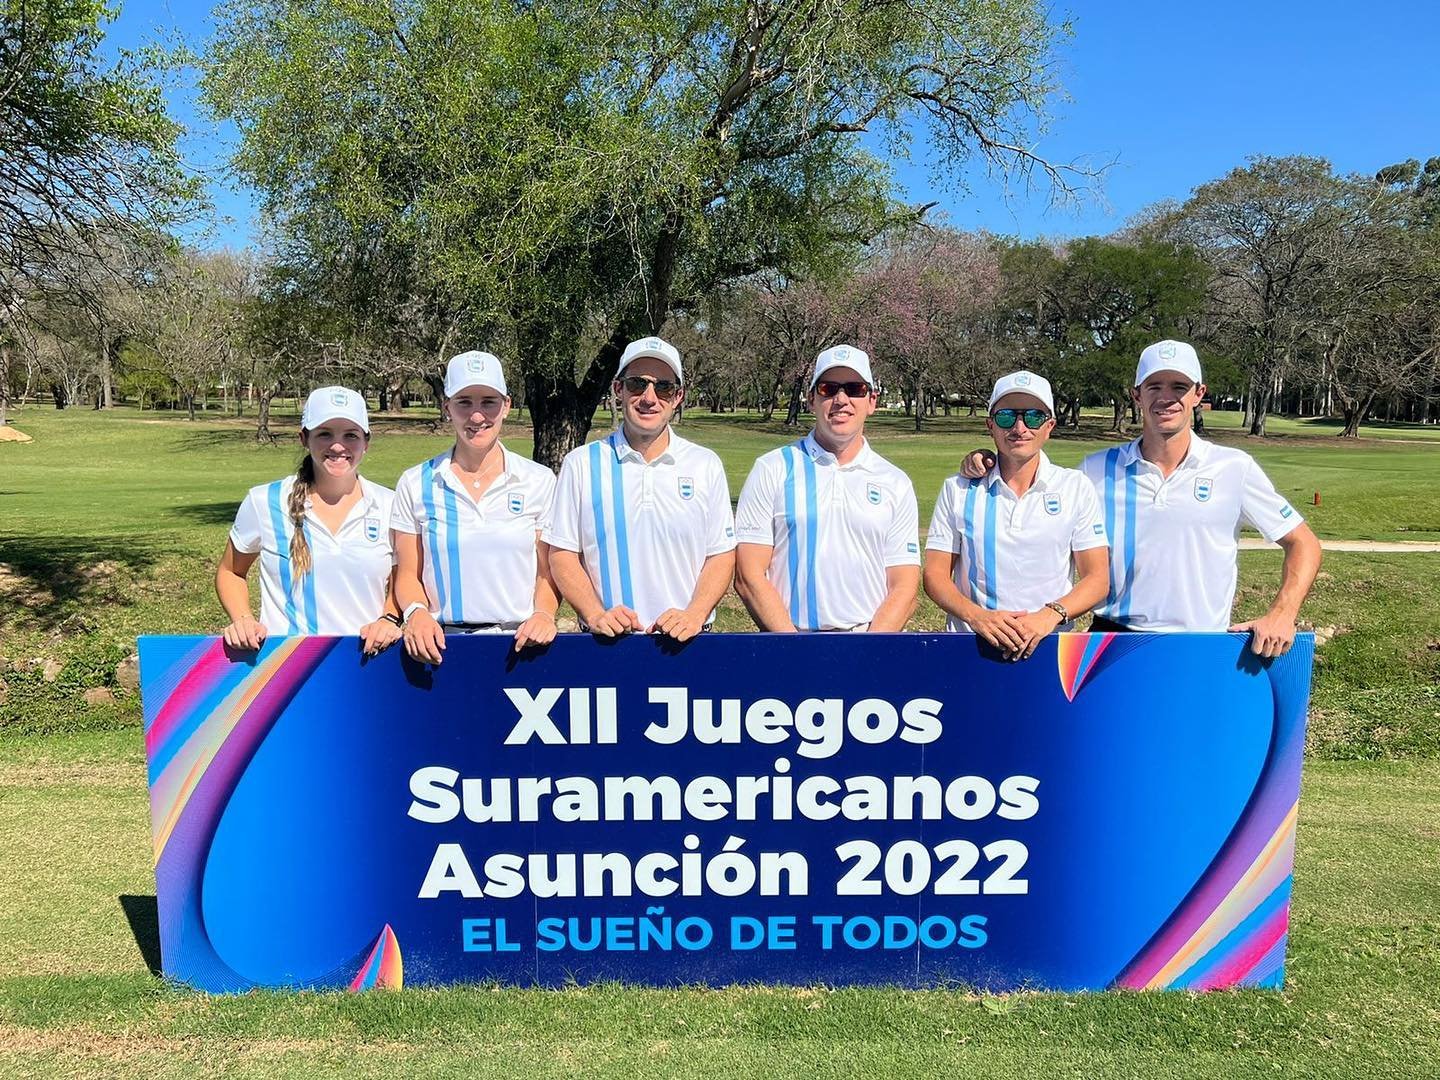 Photo of Arrancó el golf en Asunción 2022